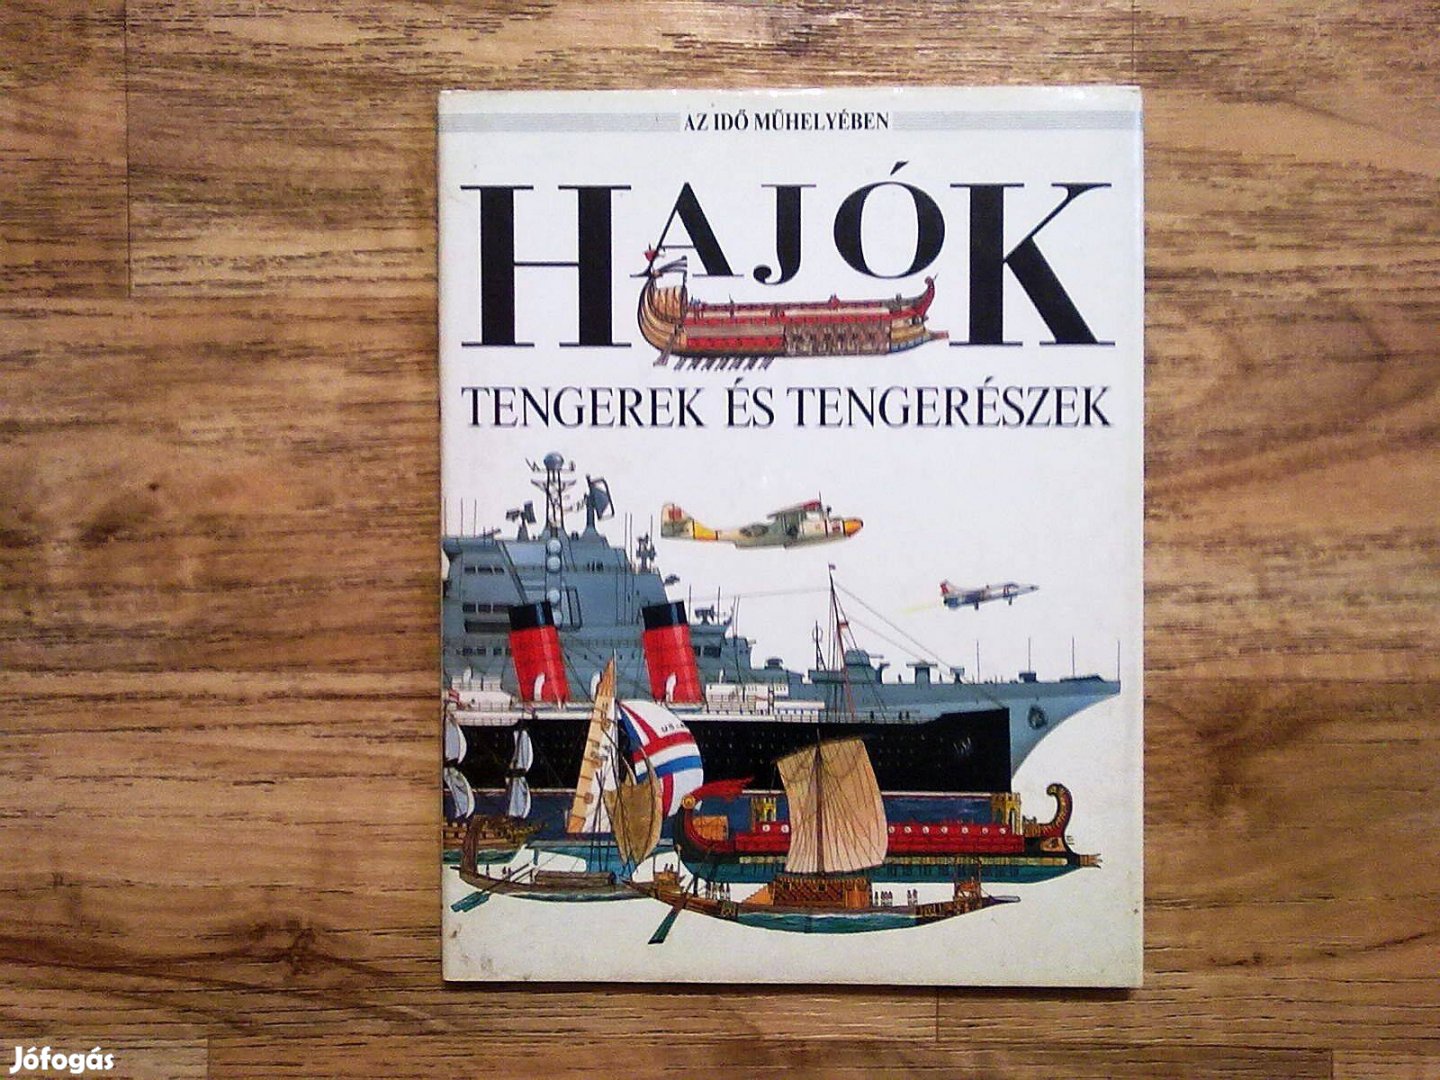 Hajók - Tengerek és tengerészek (szép könyv)